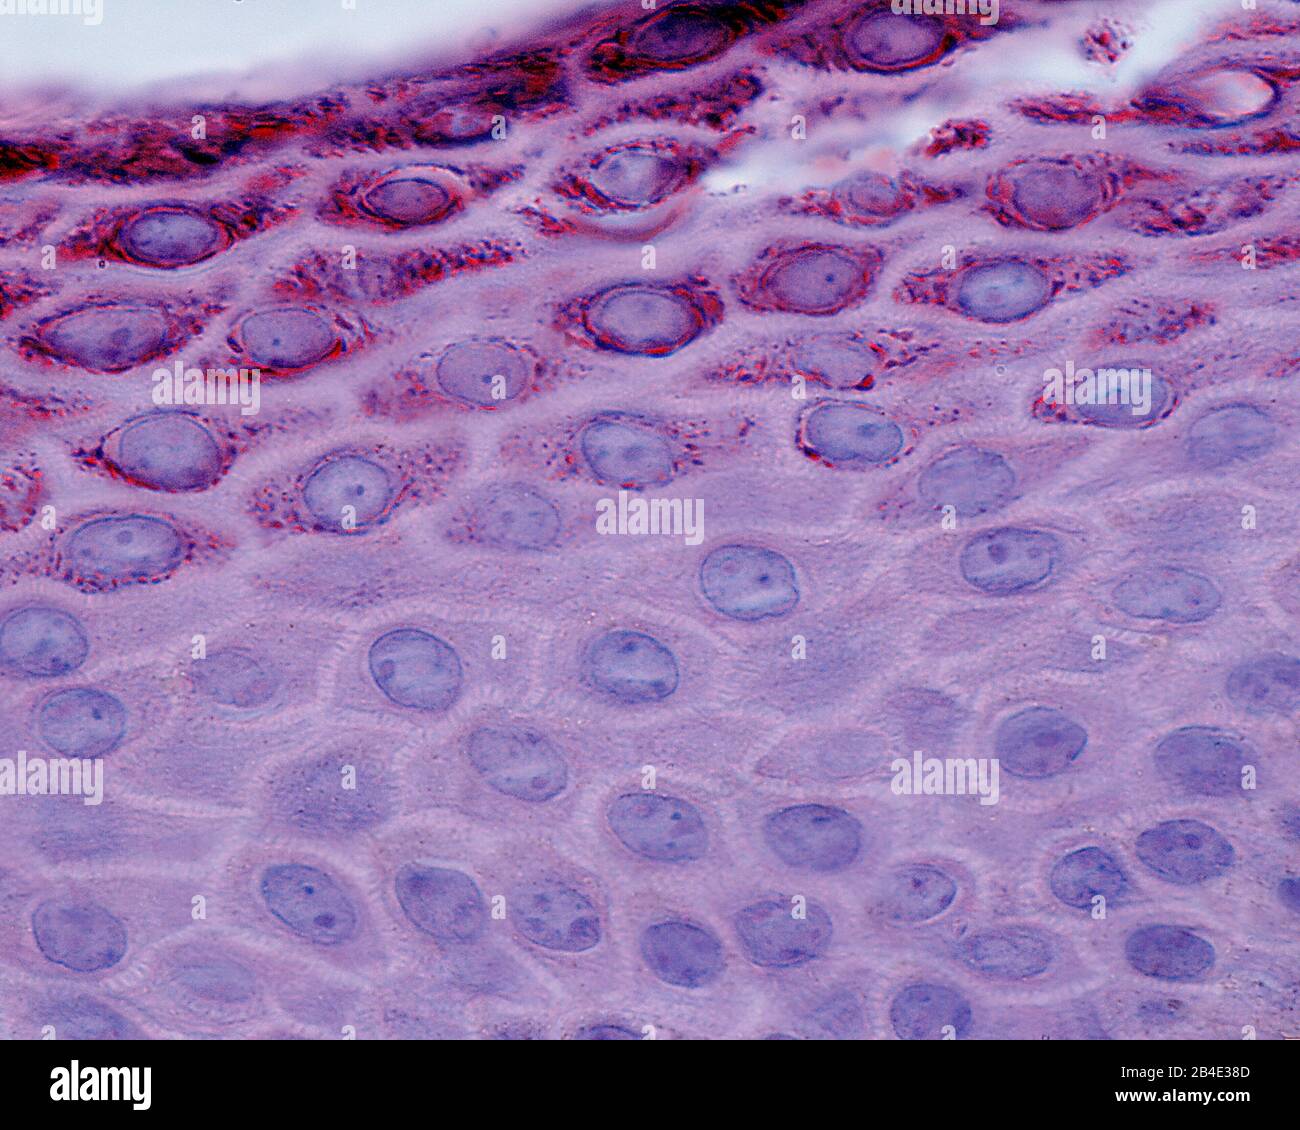 Micrographe léger montrant la stratum spinosum (fond) et la stratum granulosum (couche granuleuse) de l'épiderme de la peau. Banque D'Images